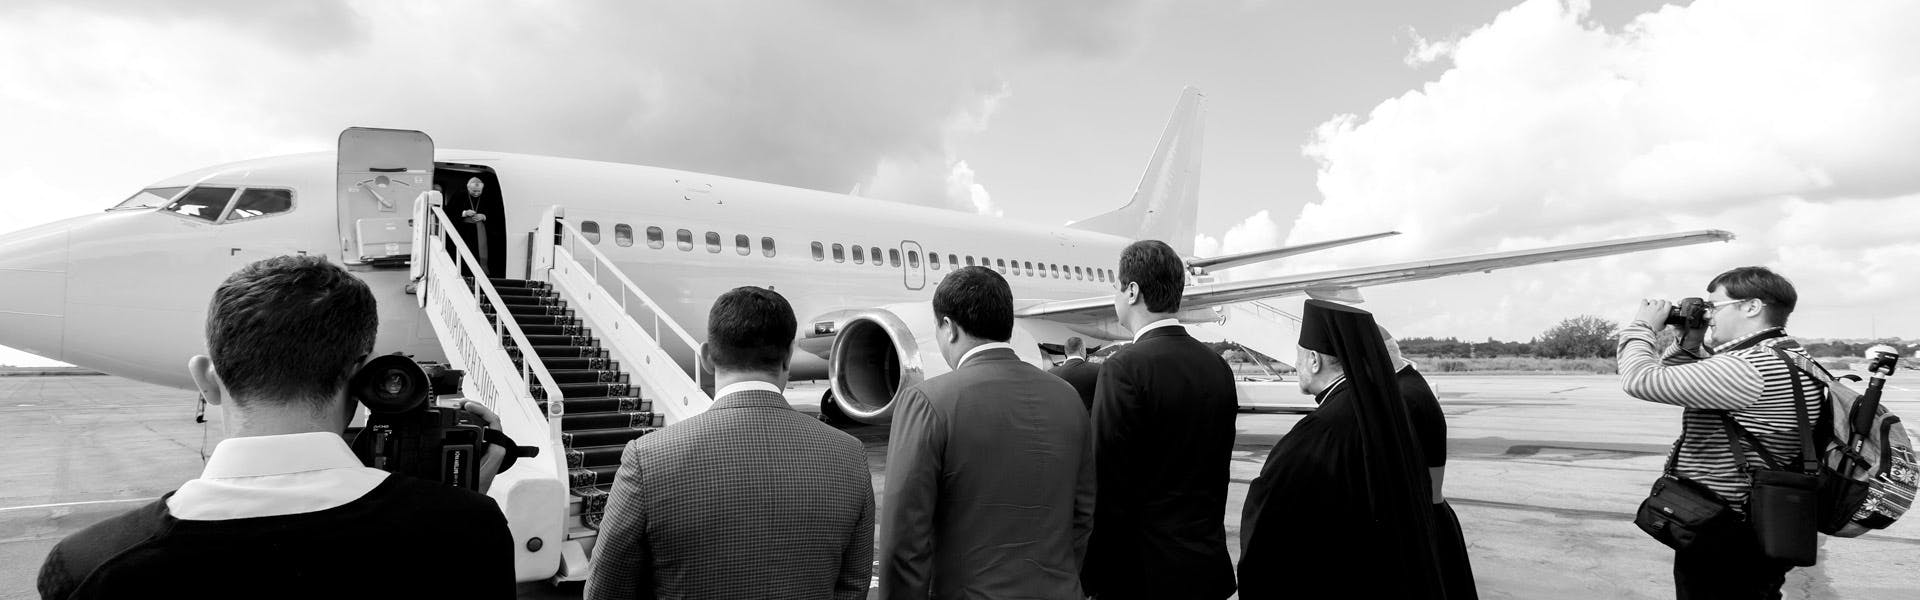 Funcionarios recibiendo a una delegación deportiva oficial en el aeropuerto. El flete de un avión es una forma eficaz de transportar a las delegaciones oficiales.